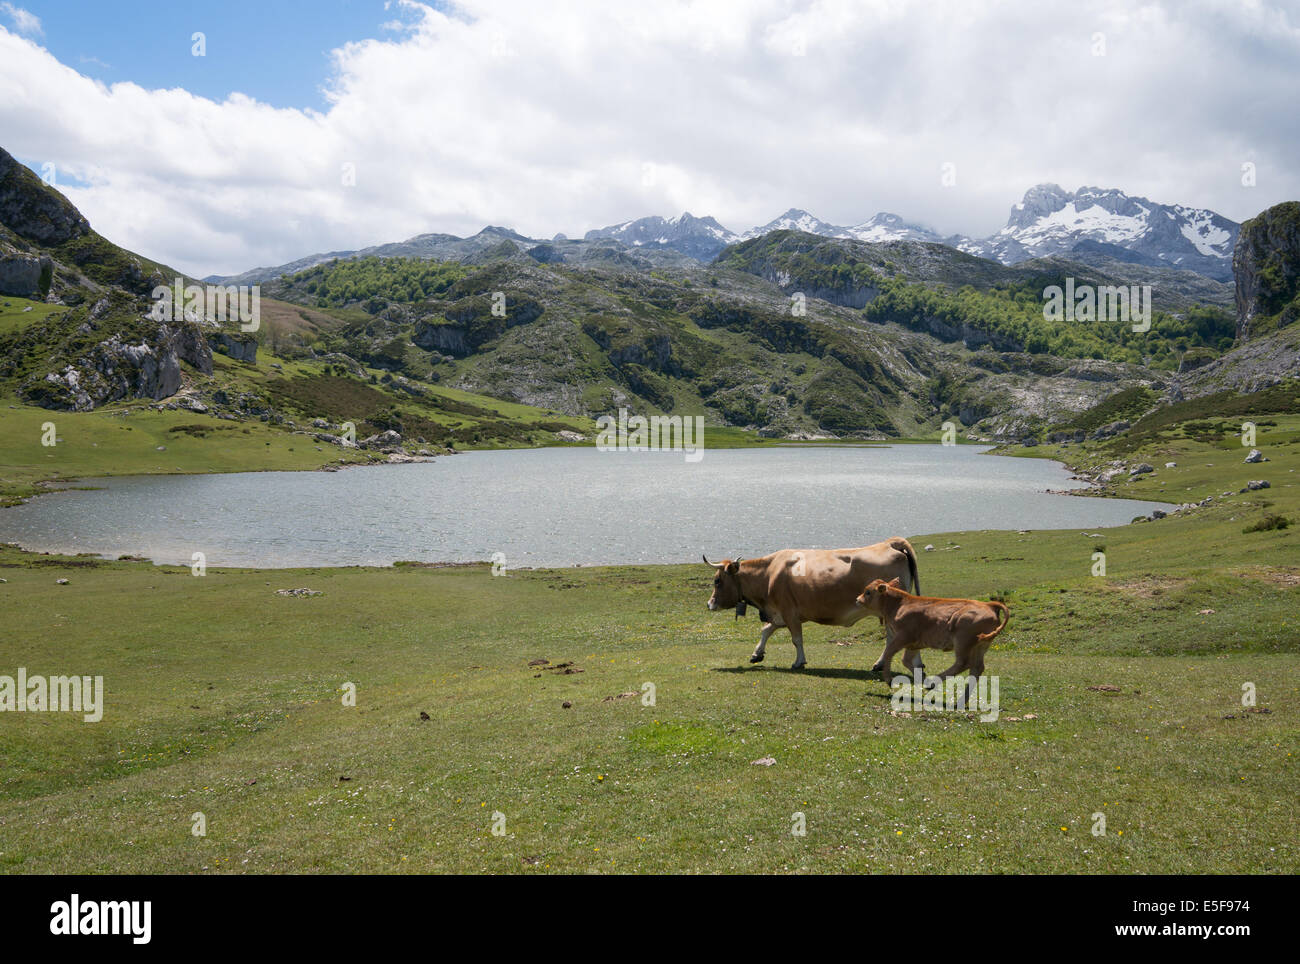 La vache et le lac Ercina, veau avec monts Cantabriques en arrière-plan, parc national des Picos de Europa dans les Asturies, Espagne, Europe Banque D'Images